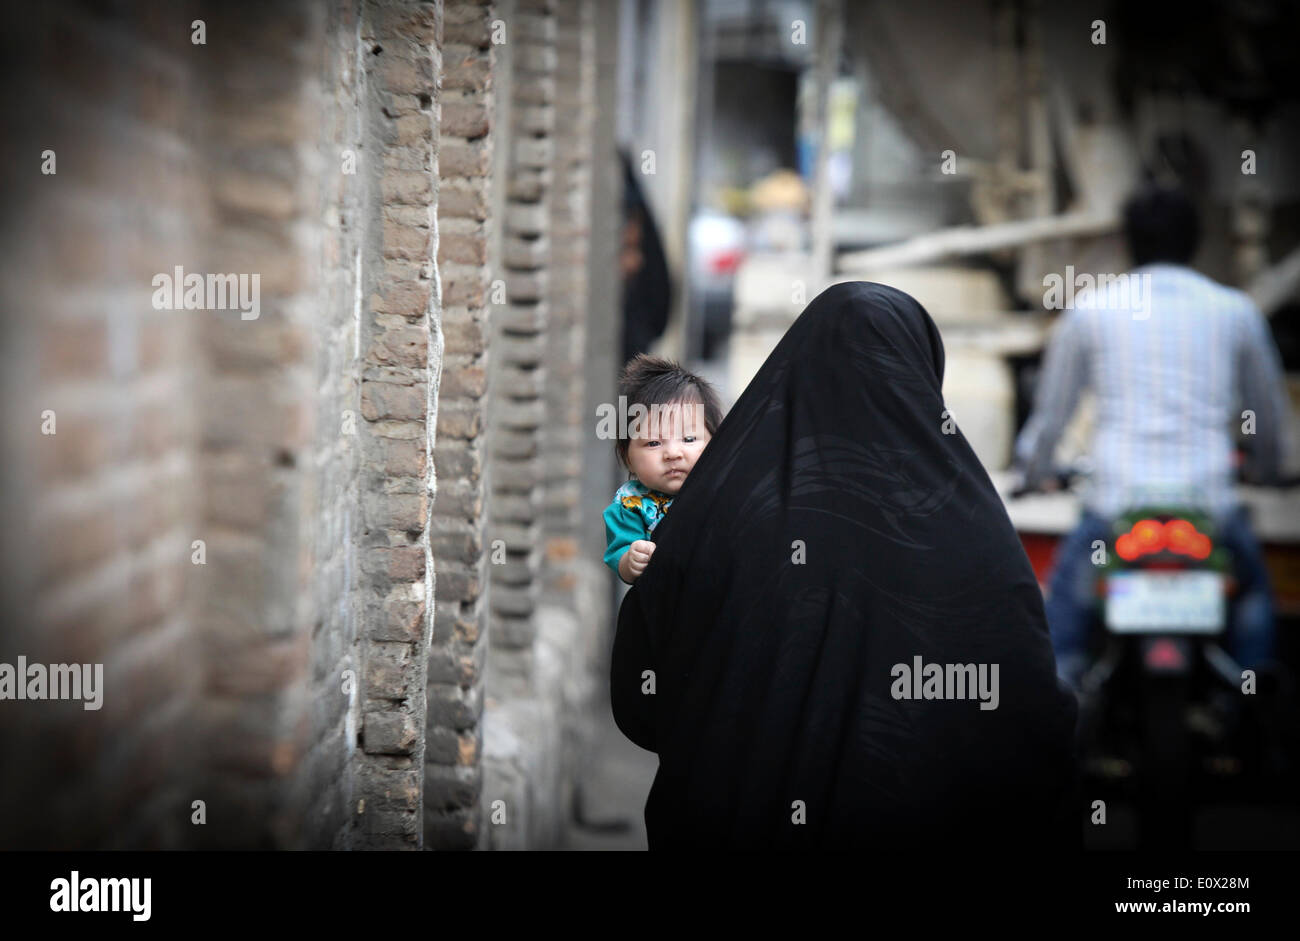 Téhéran, Iran. 19 mai, 2014. Une femme en tchador porte son enfant sur une ruelle à Téhéran, capitale de l'Iran, le 19 mai 2014. Tchador est un genre de Hijab officiel pour de nombreuses femmes en Iran dans les lieux publics. Le Hijab, une couverture des cheveux et le corps pour les femmes, a été tenu en public après la révolution islamique en Iran en 1979. © Ahmad Halabisaz/Xinhua/Alamy Live News Banque D'Images